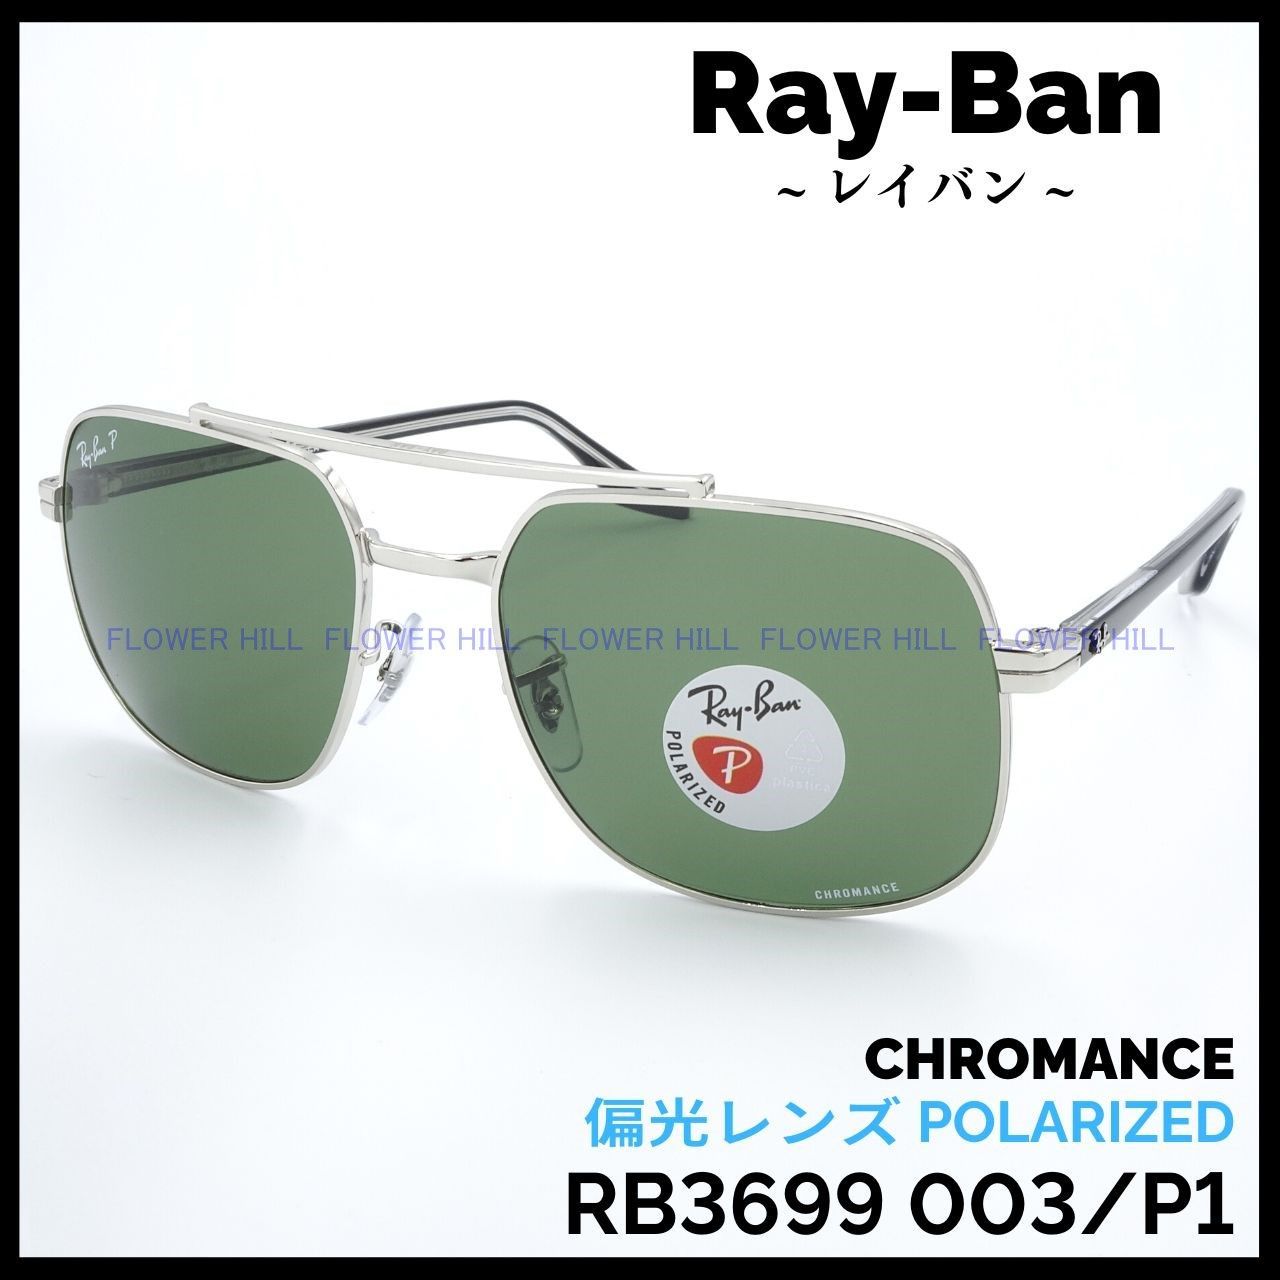 Ray-Ban レイバン 偏光サングラス RB3699 003/P1 クロマンス